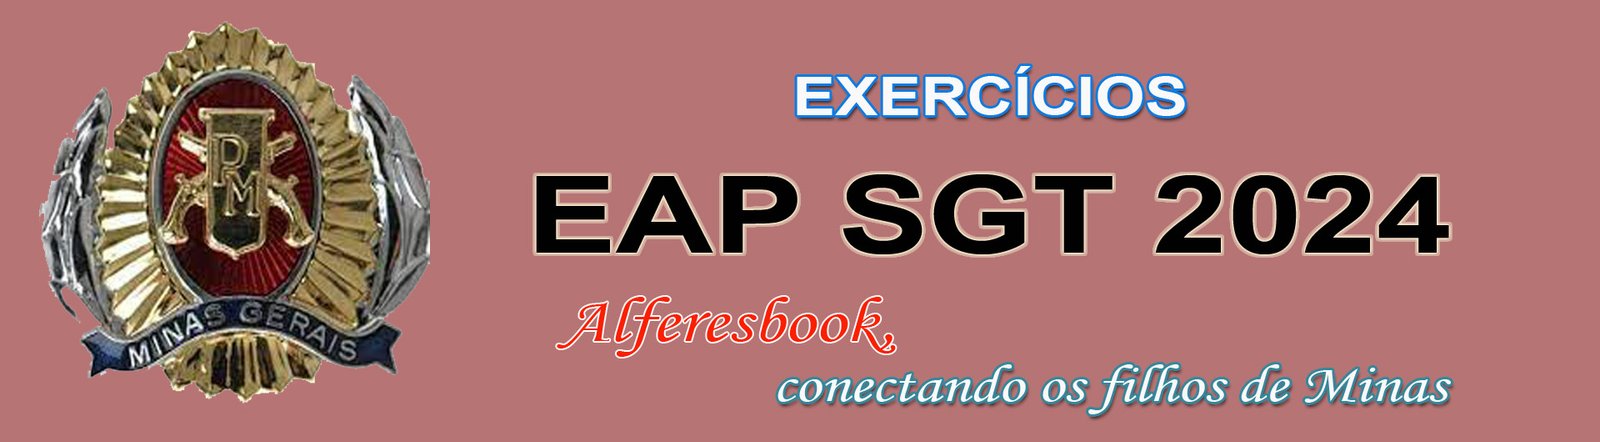 Exercícios Online EAP Sgt 2024